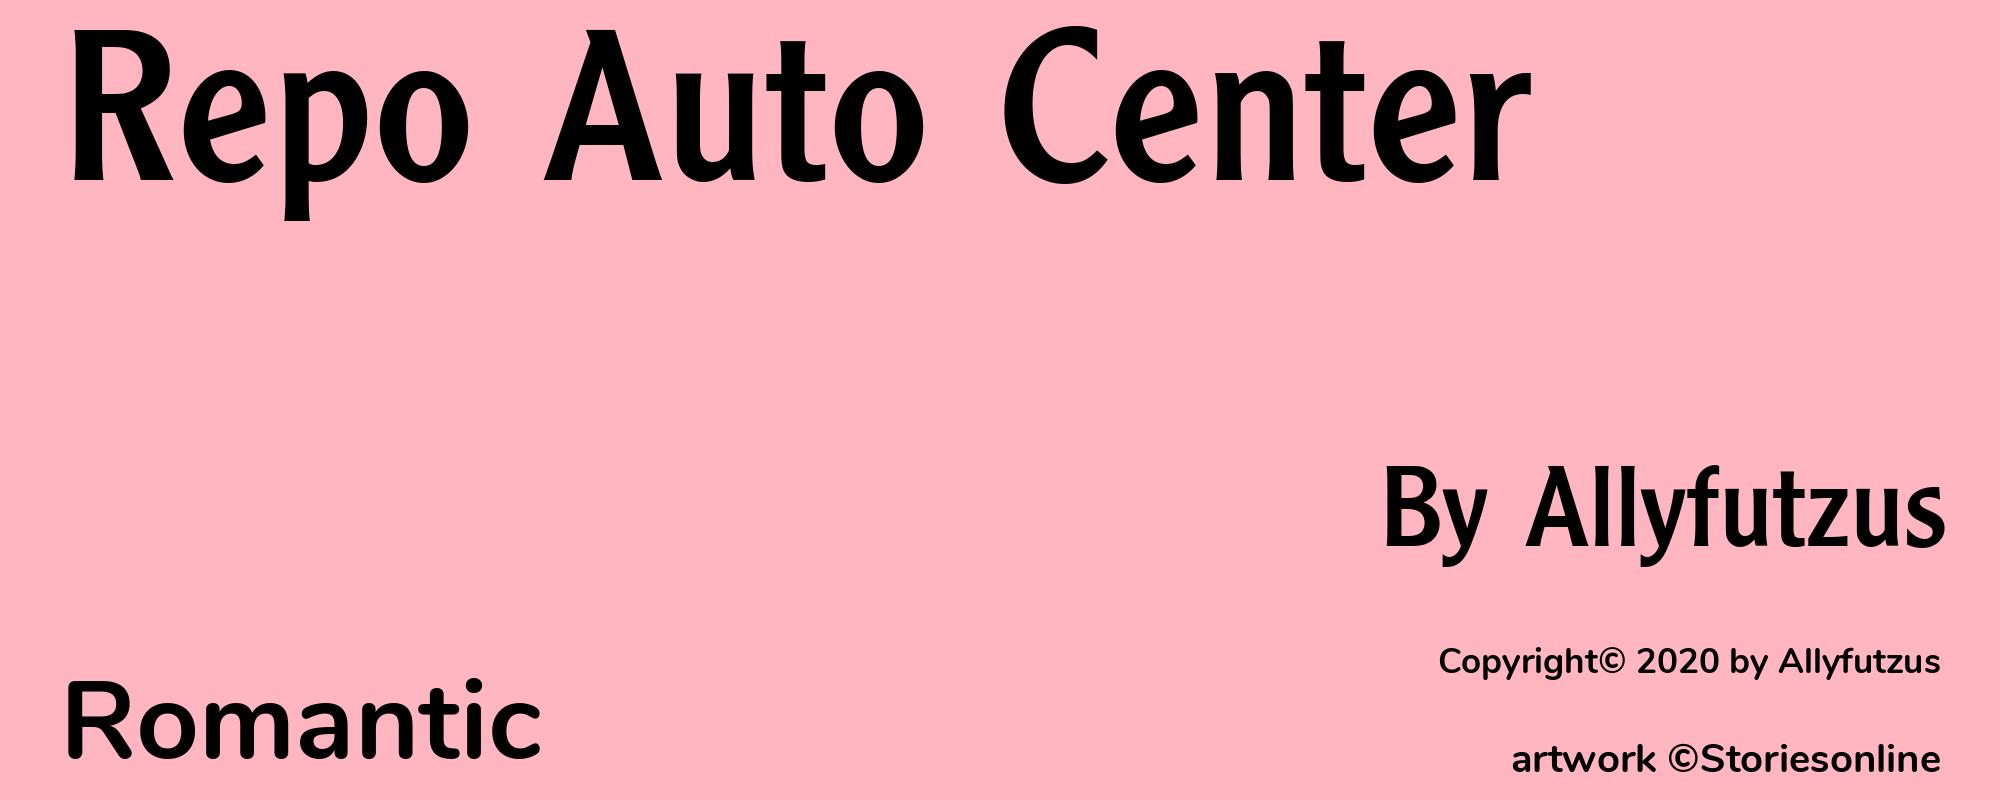 Repo Auto Center - Cover